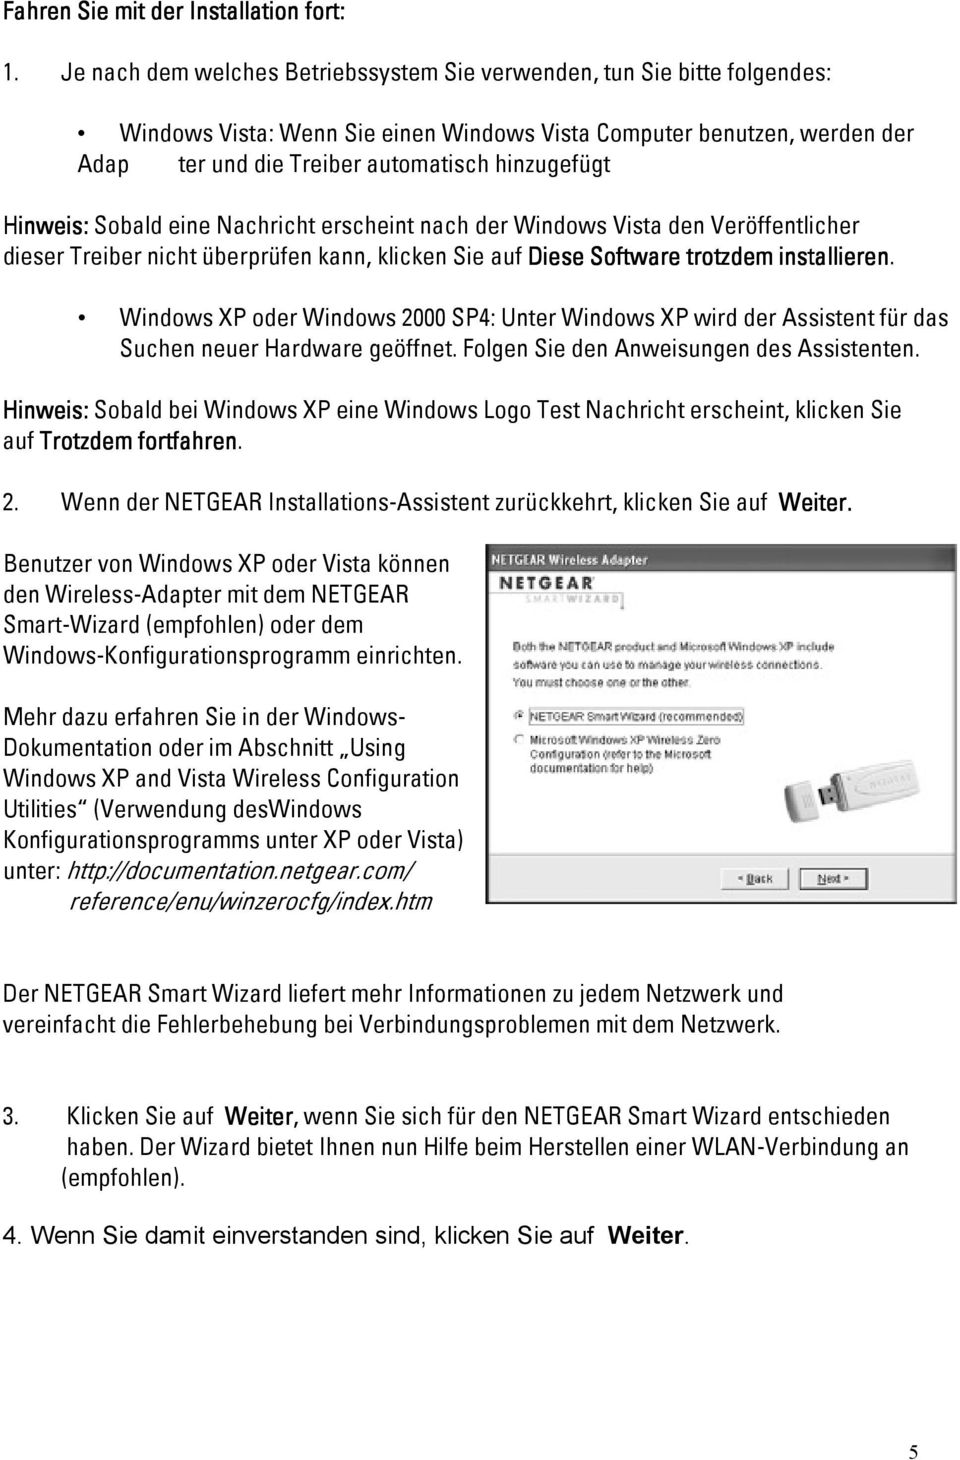 Hinweis: Sobald eine Nachricht erscheint nach der Windows Vista den Veröffentlicher dieser Treiber nicht überprüfen kann, klicken Sie auf Diese Software trotzdem installieren.